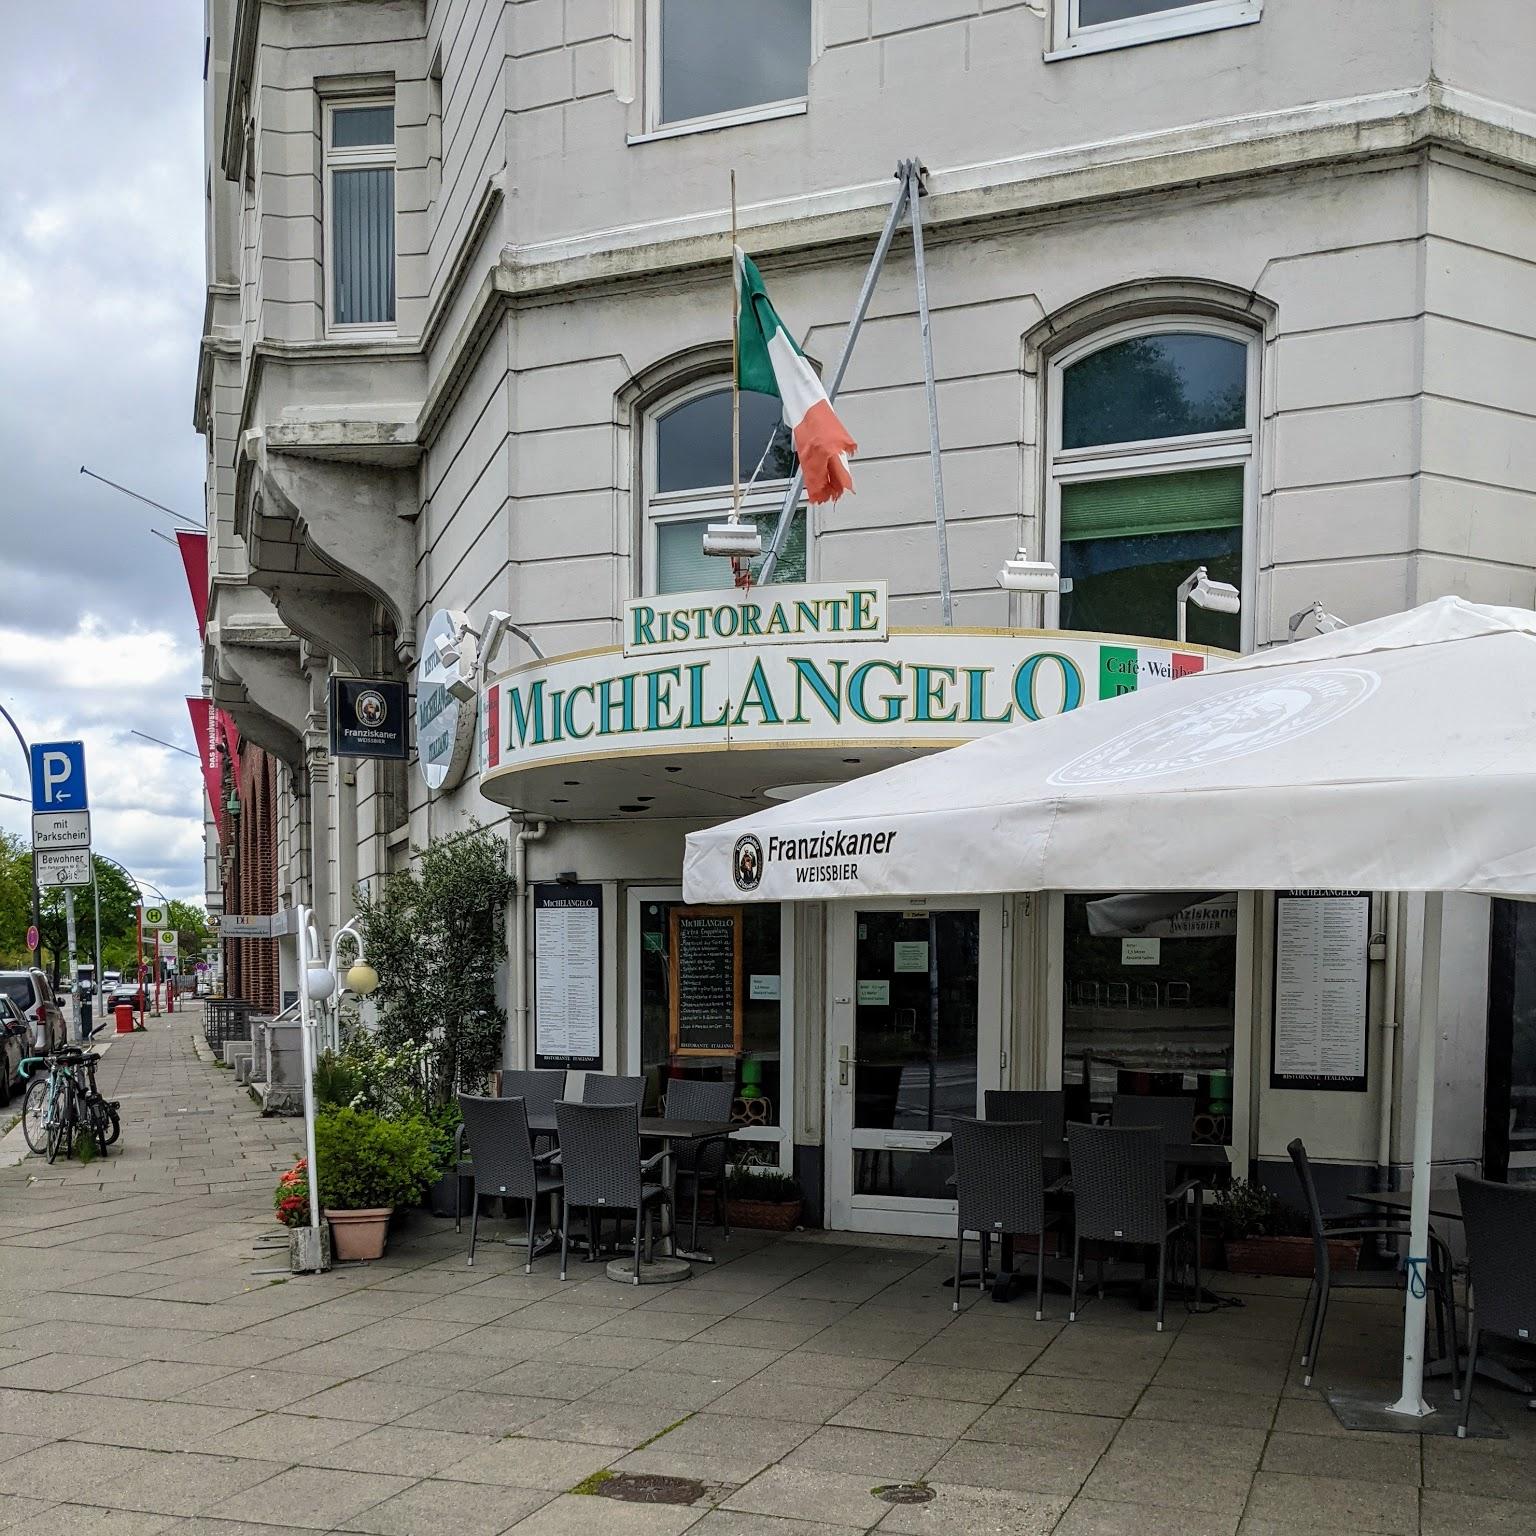 Restaurant "Michelangelo Restaurant" in Hamburg